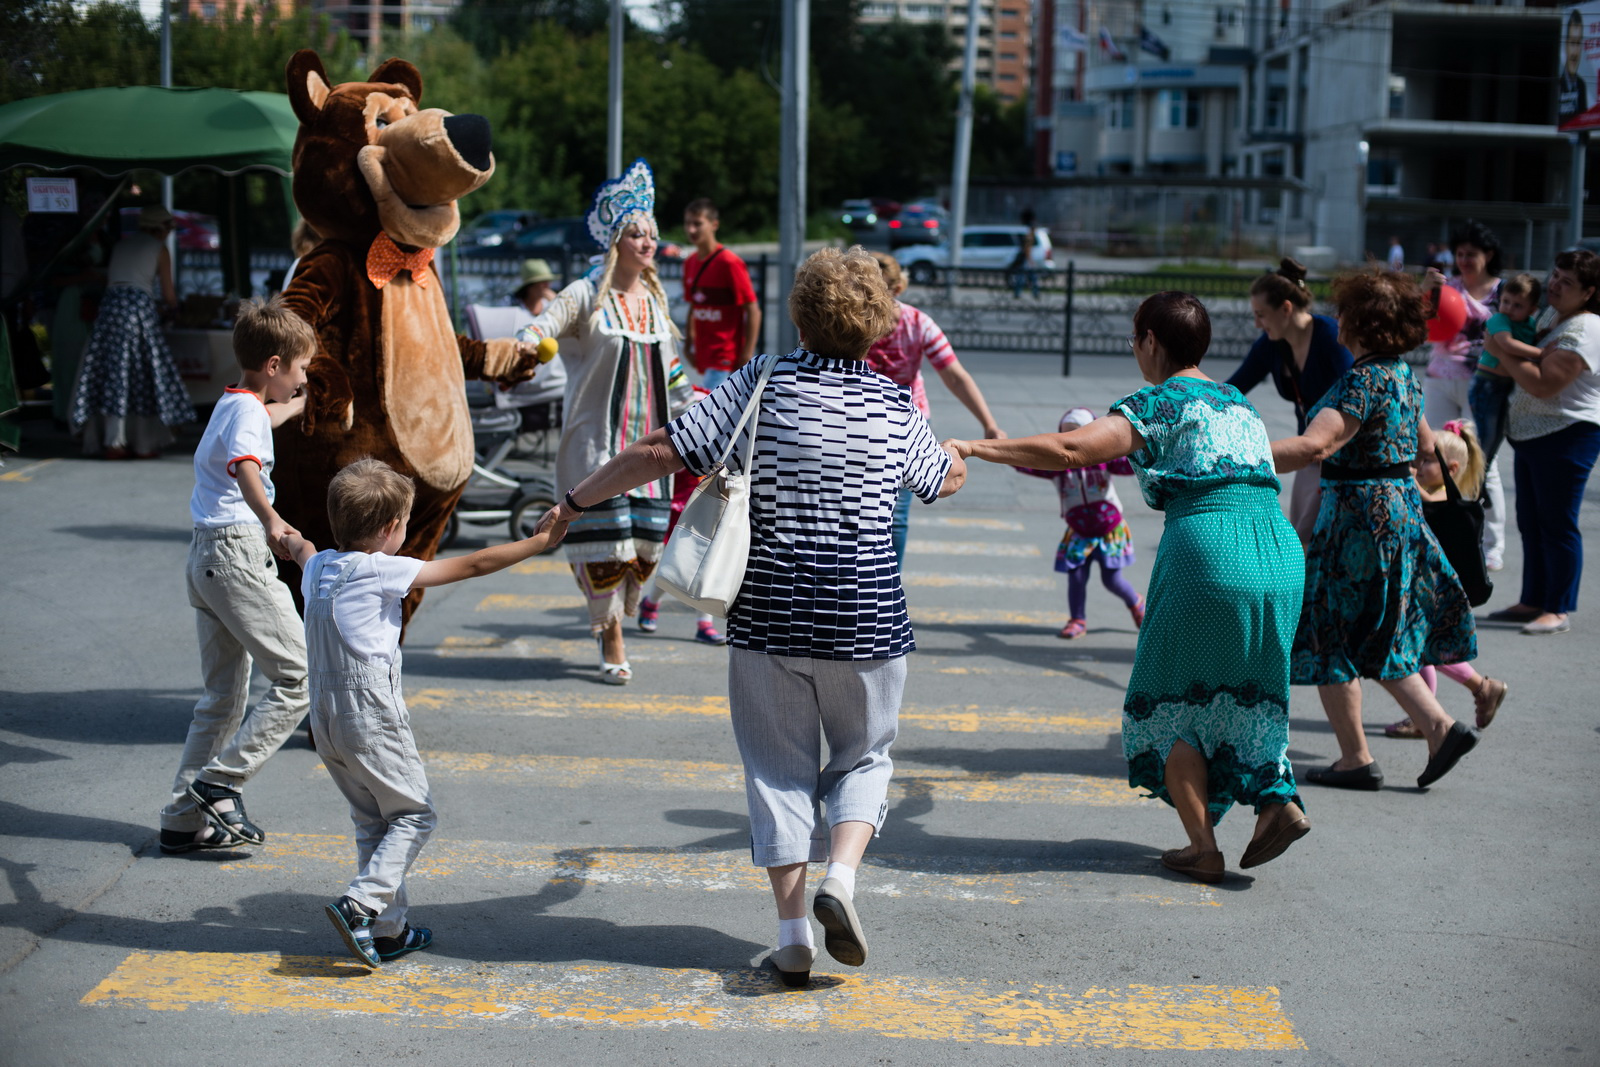 Прямо на улице, недалеко от площади Калинина, люди танцевали и водили хороводы в компании доброго медведя, который, как и все собравшиеся здесь, обожает сладкий мед!